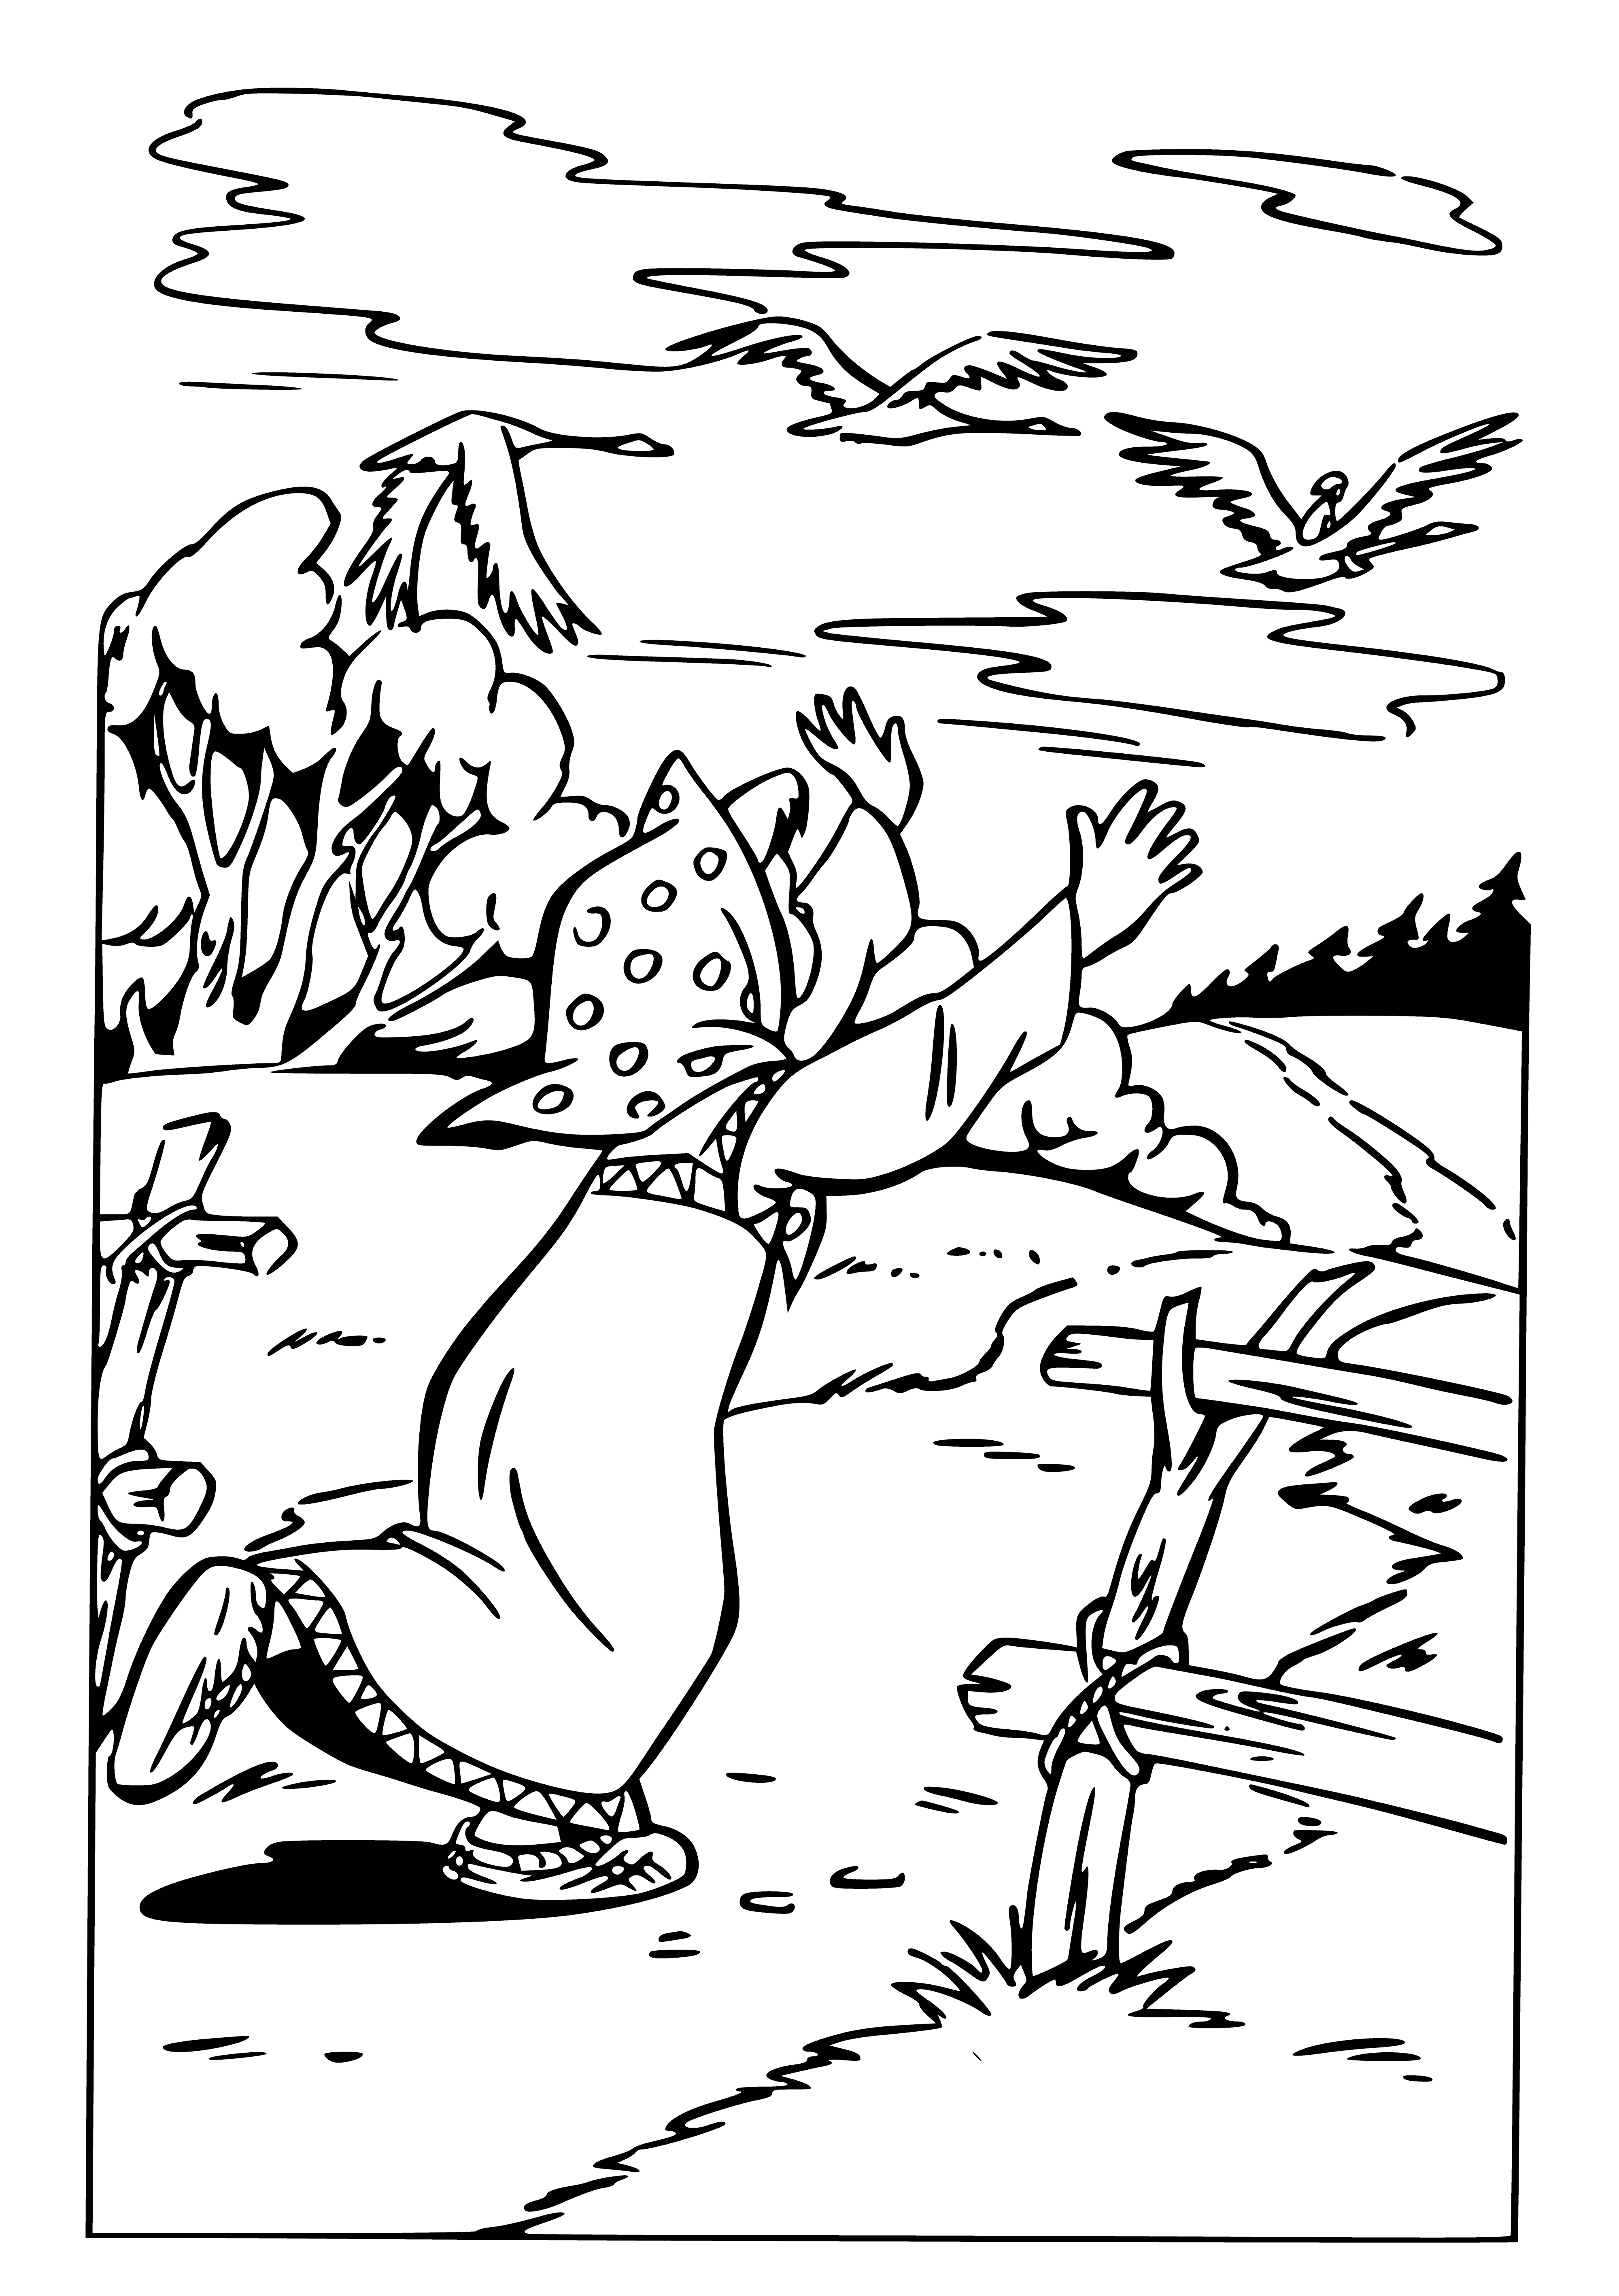 Kaz-kuğular Ivanushka'yı alıp götürüyor boyama sayfası